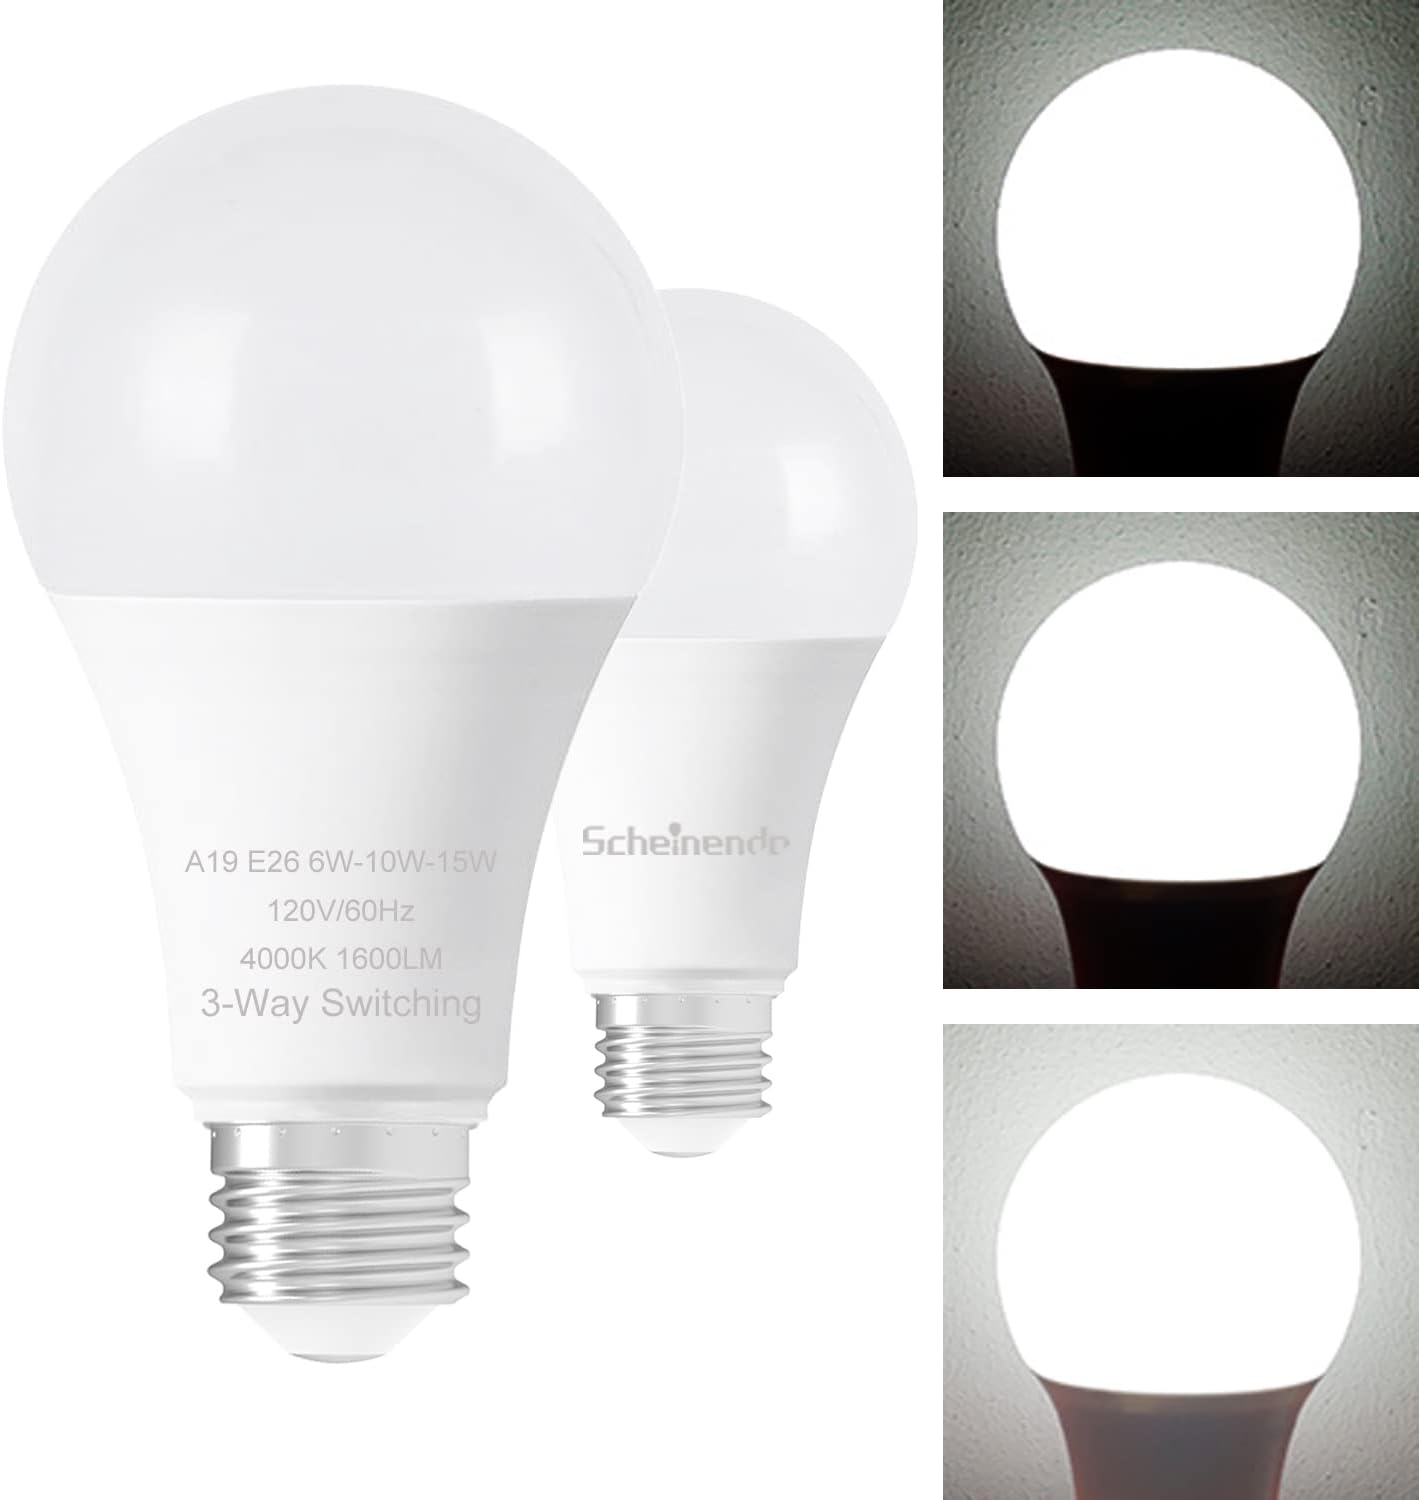 Scheinenda 3-Way Led Light Bulbs A19 30 70 100 Watt [...]